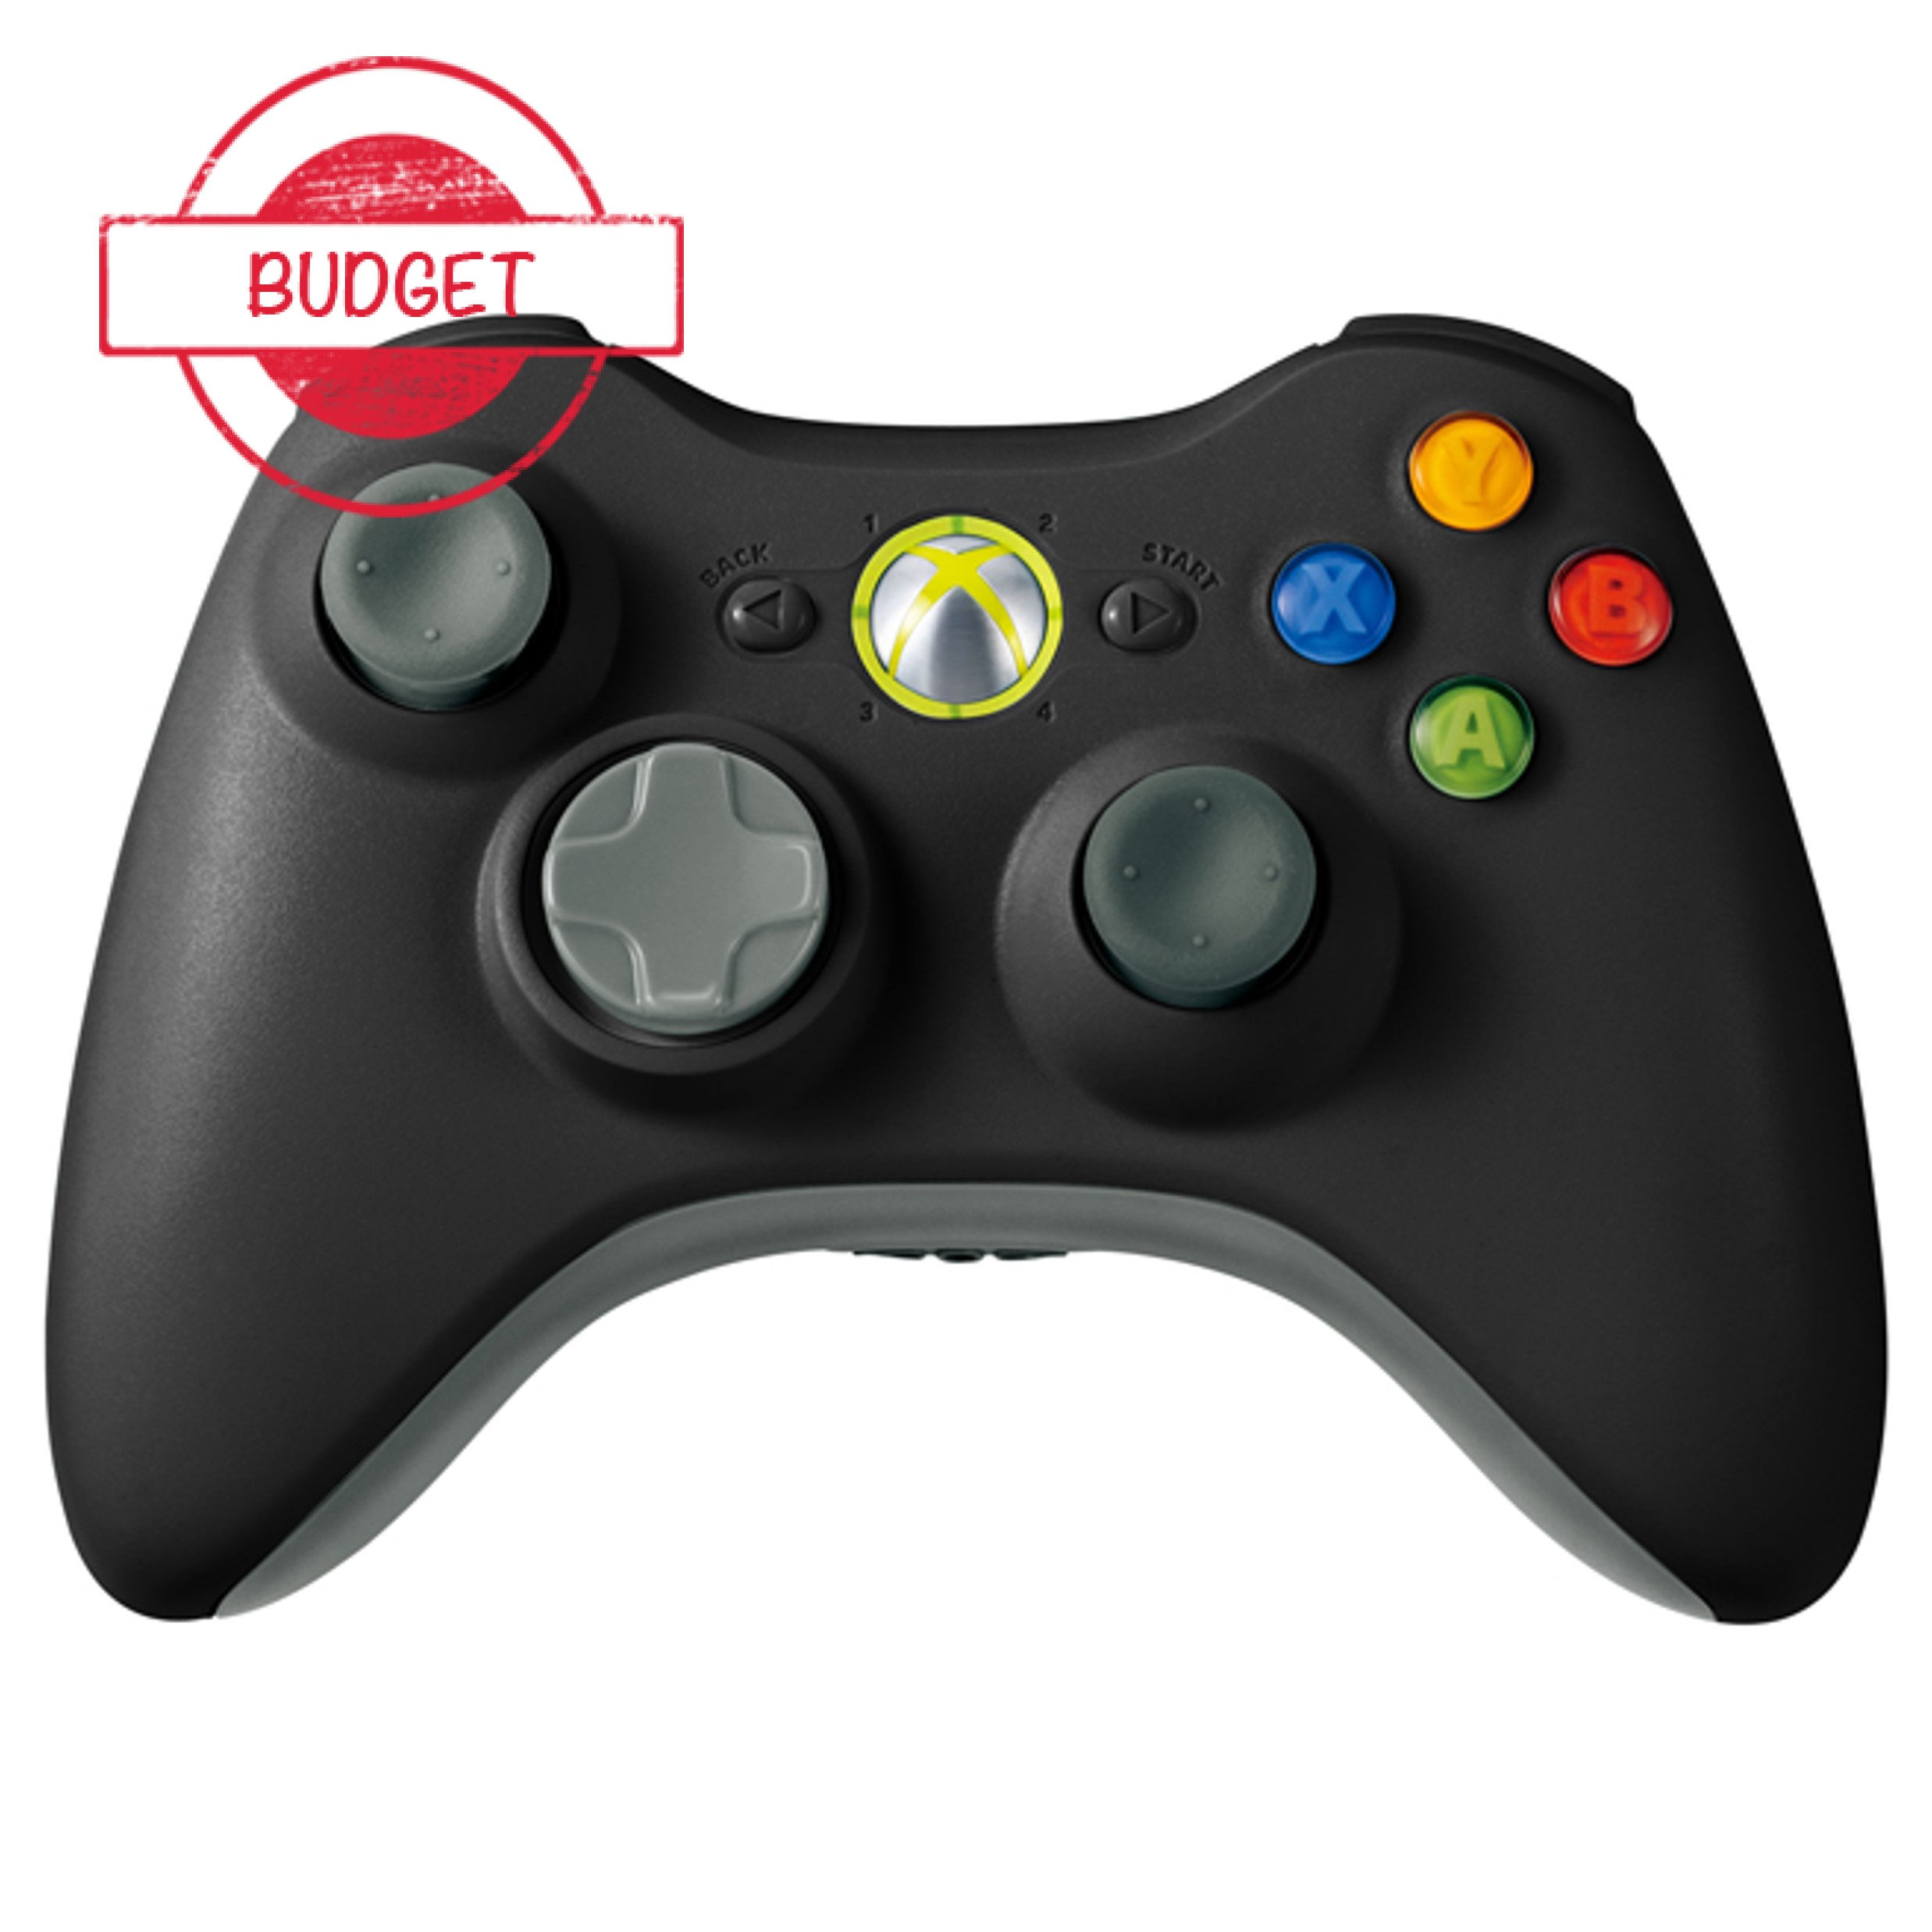 Originele Microsoft Xbox 360 Controller - Zwart - Budget Kopen | Xbox 360 Hardware